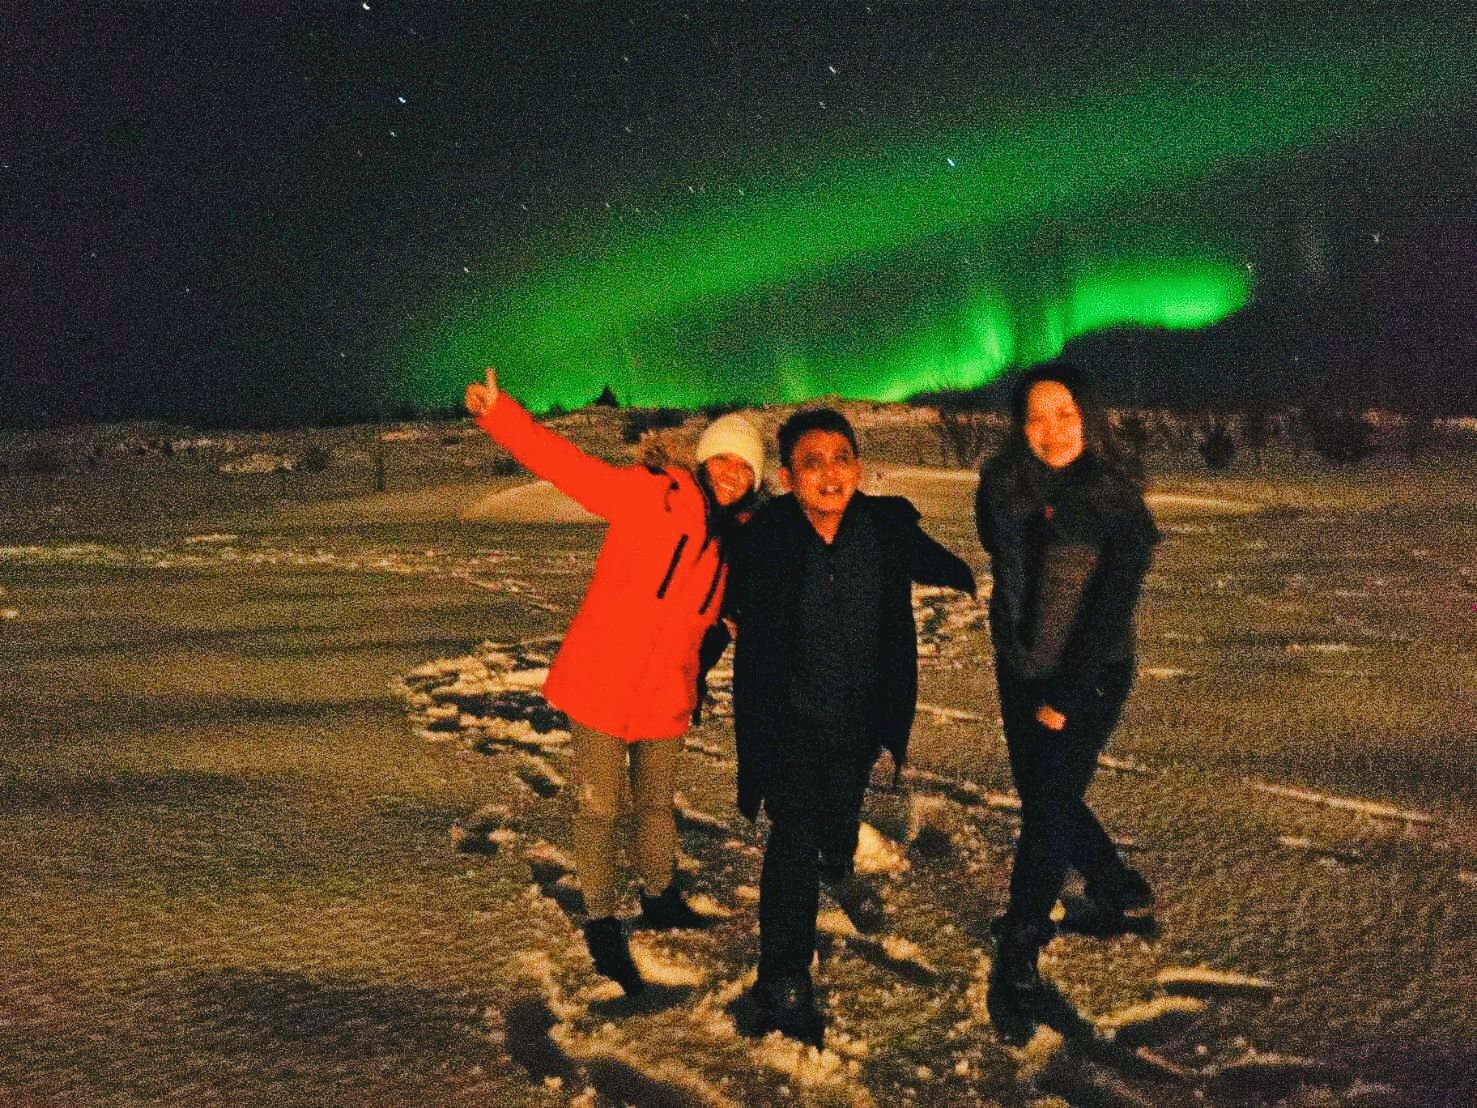 คลิ๊ก!!!-ชมภาพ คณะทัวร์ ท่องเที่ยว ประเทศไอซ์แลนด์ AMAZING ICELAND